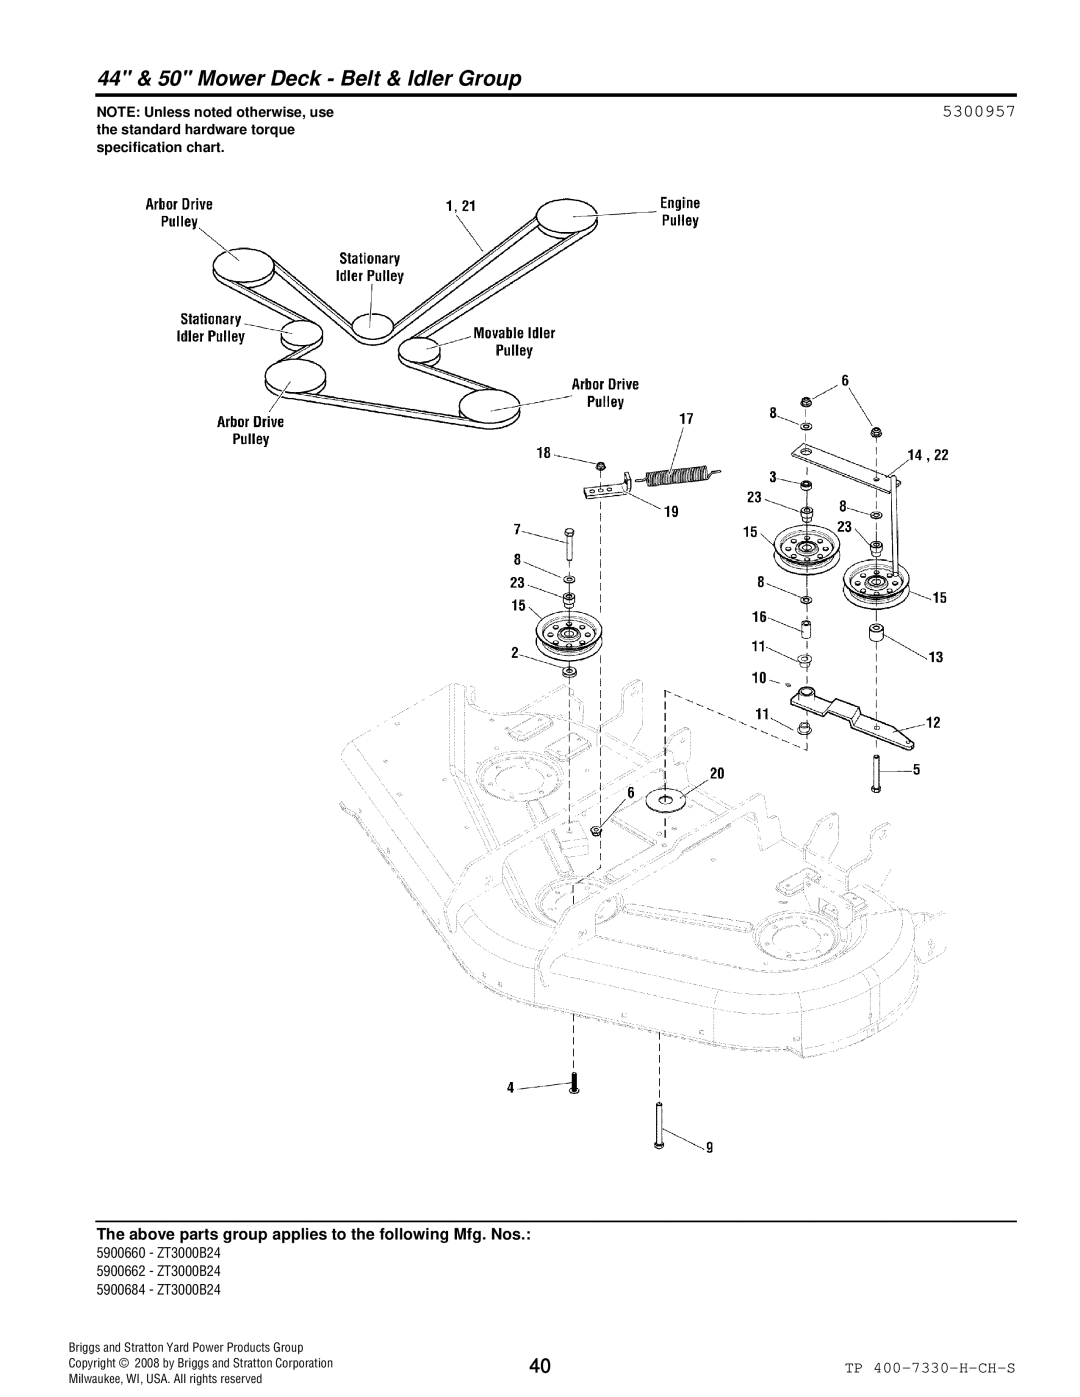 Simplicity ZT3000 manual 44 & 50 Mower Deck Belt & Idler Group, 5300957 